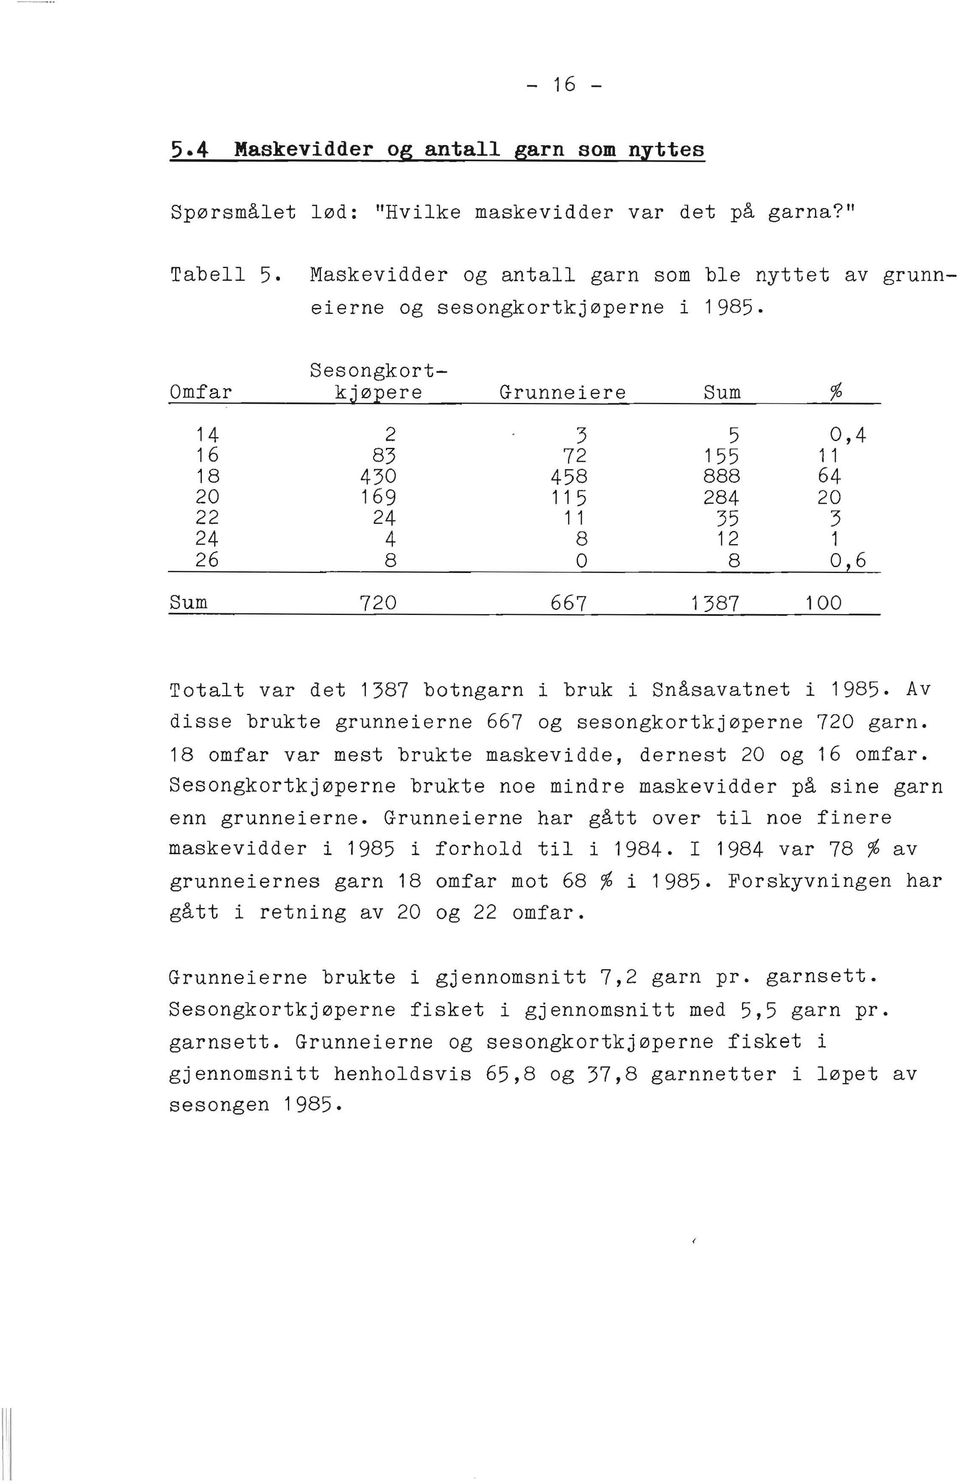 i bruk i Snåsavatnet i 1985. Av disse brukte grunneierne 667 og sesongkortkjøperne 720 garn. 18 omfar var mest brukte maskevidde, dernest 20 og 16 omfar.